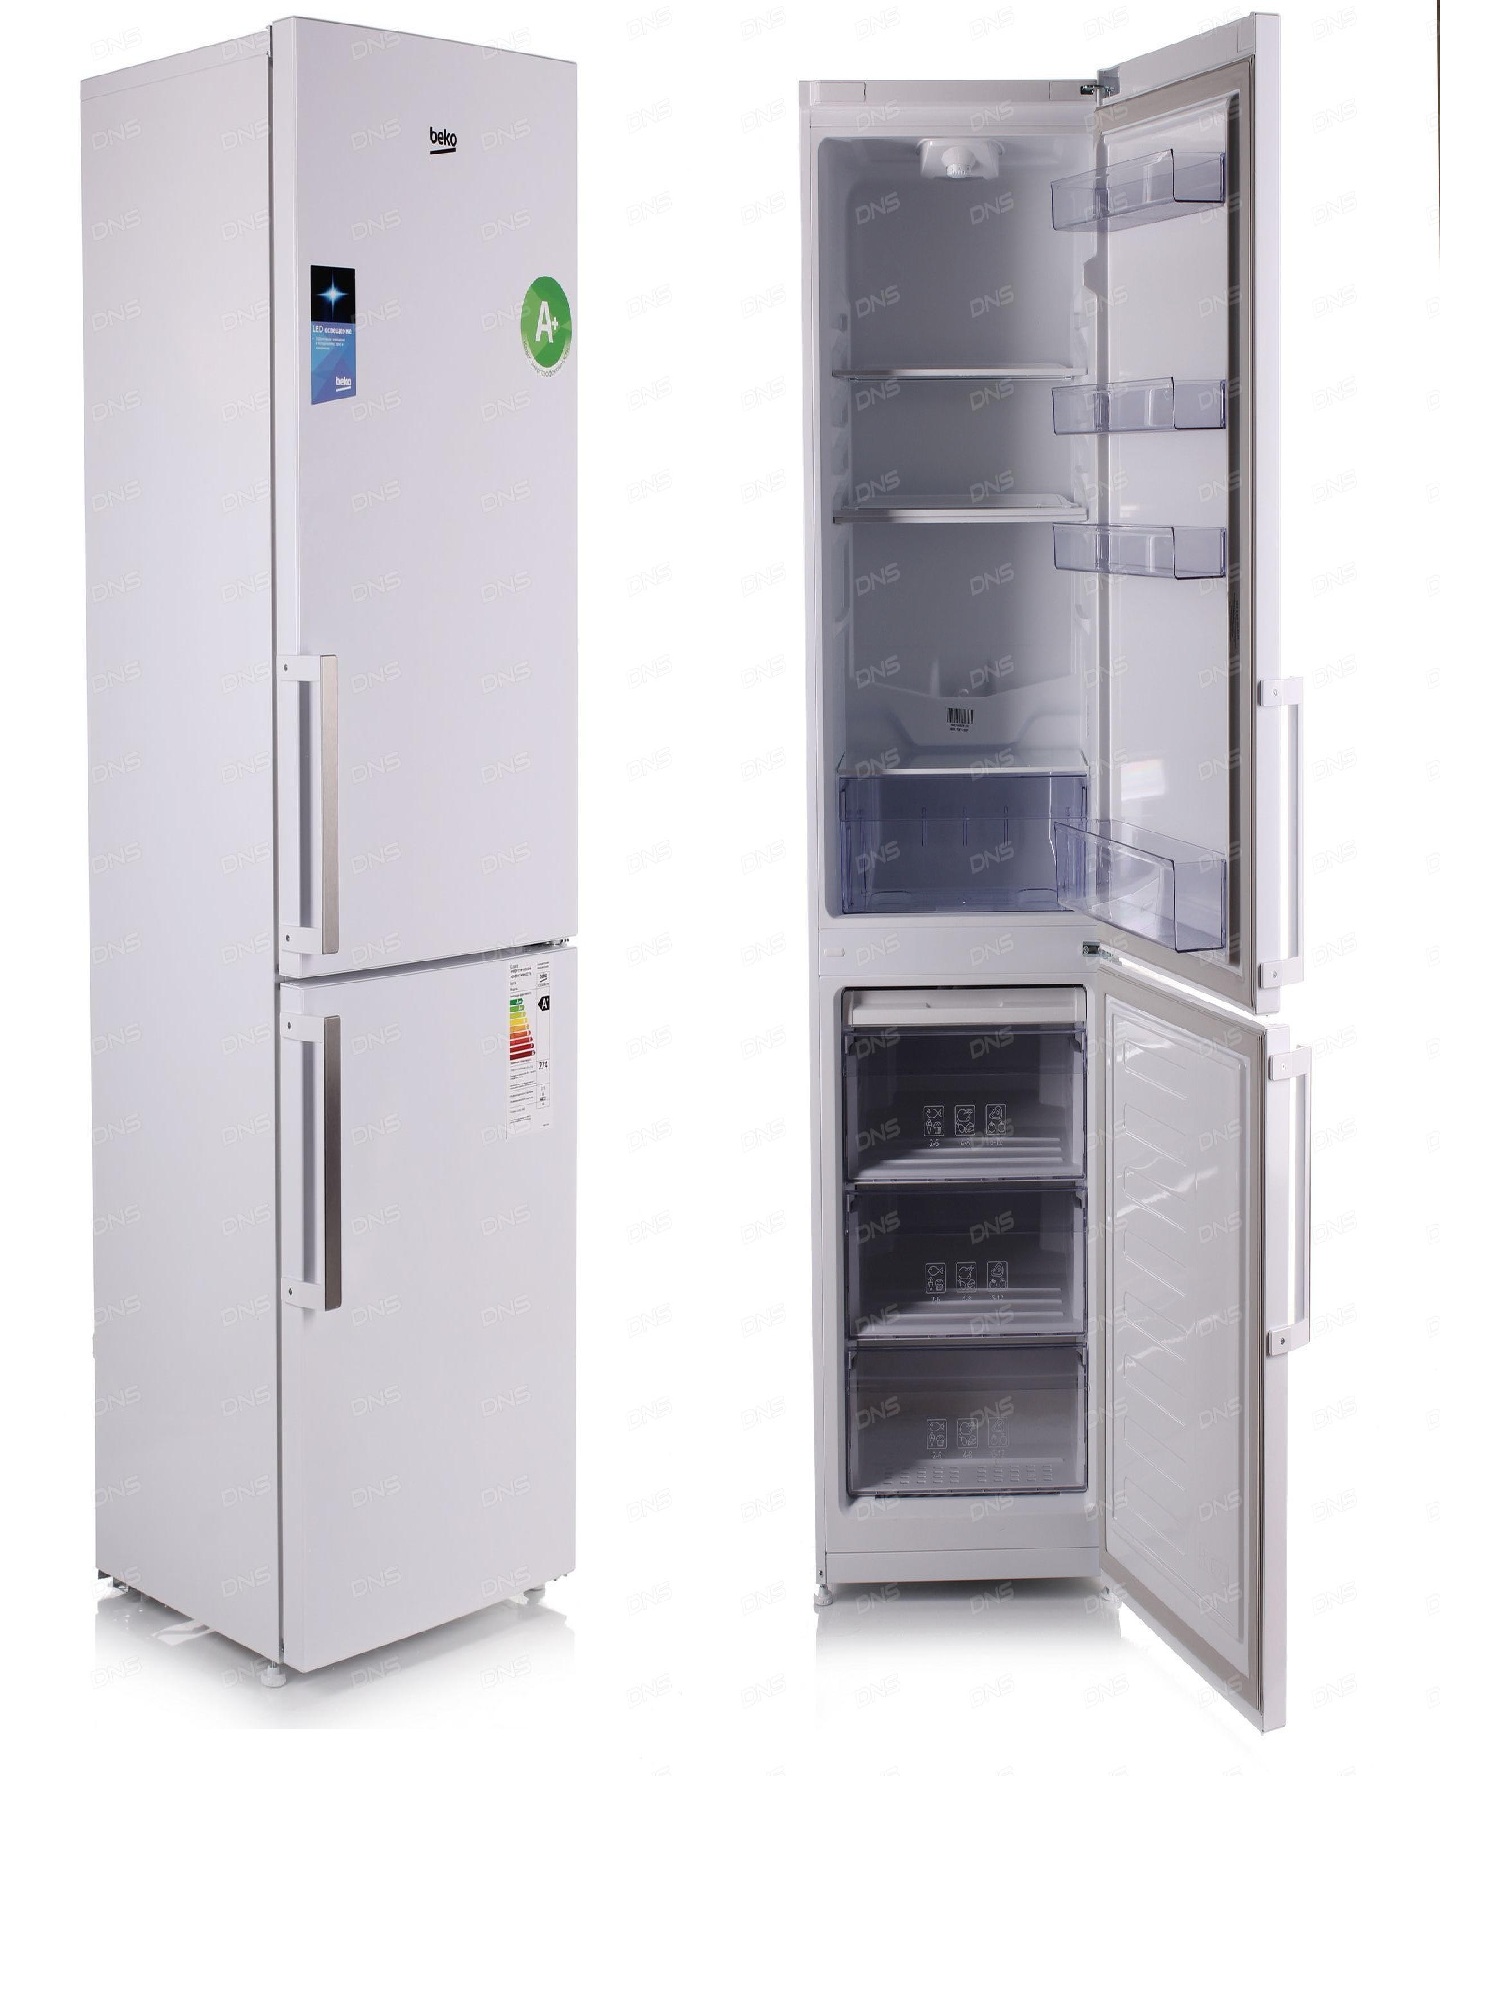 холодильник beko rcsk340m21w, купить в Красноярске холодильник beko rcsk340m21w,  купить в Красноярске дешево холодильник beko rcsk340m21w, купить в Красноярске минимальной цене холодильник beko rcsk340m21w